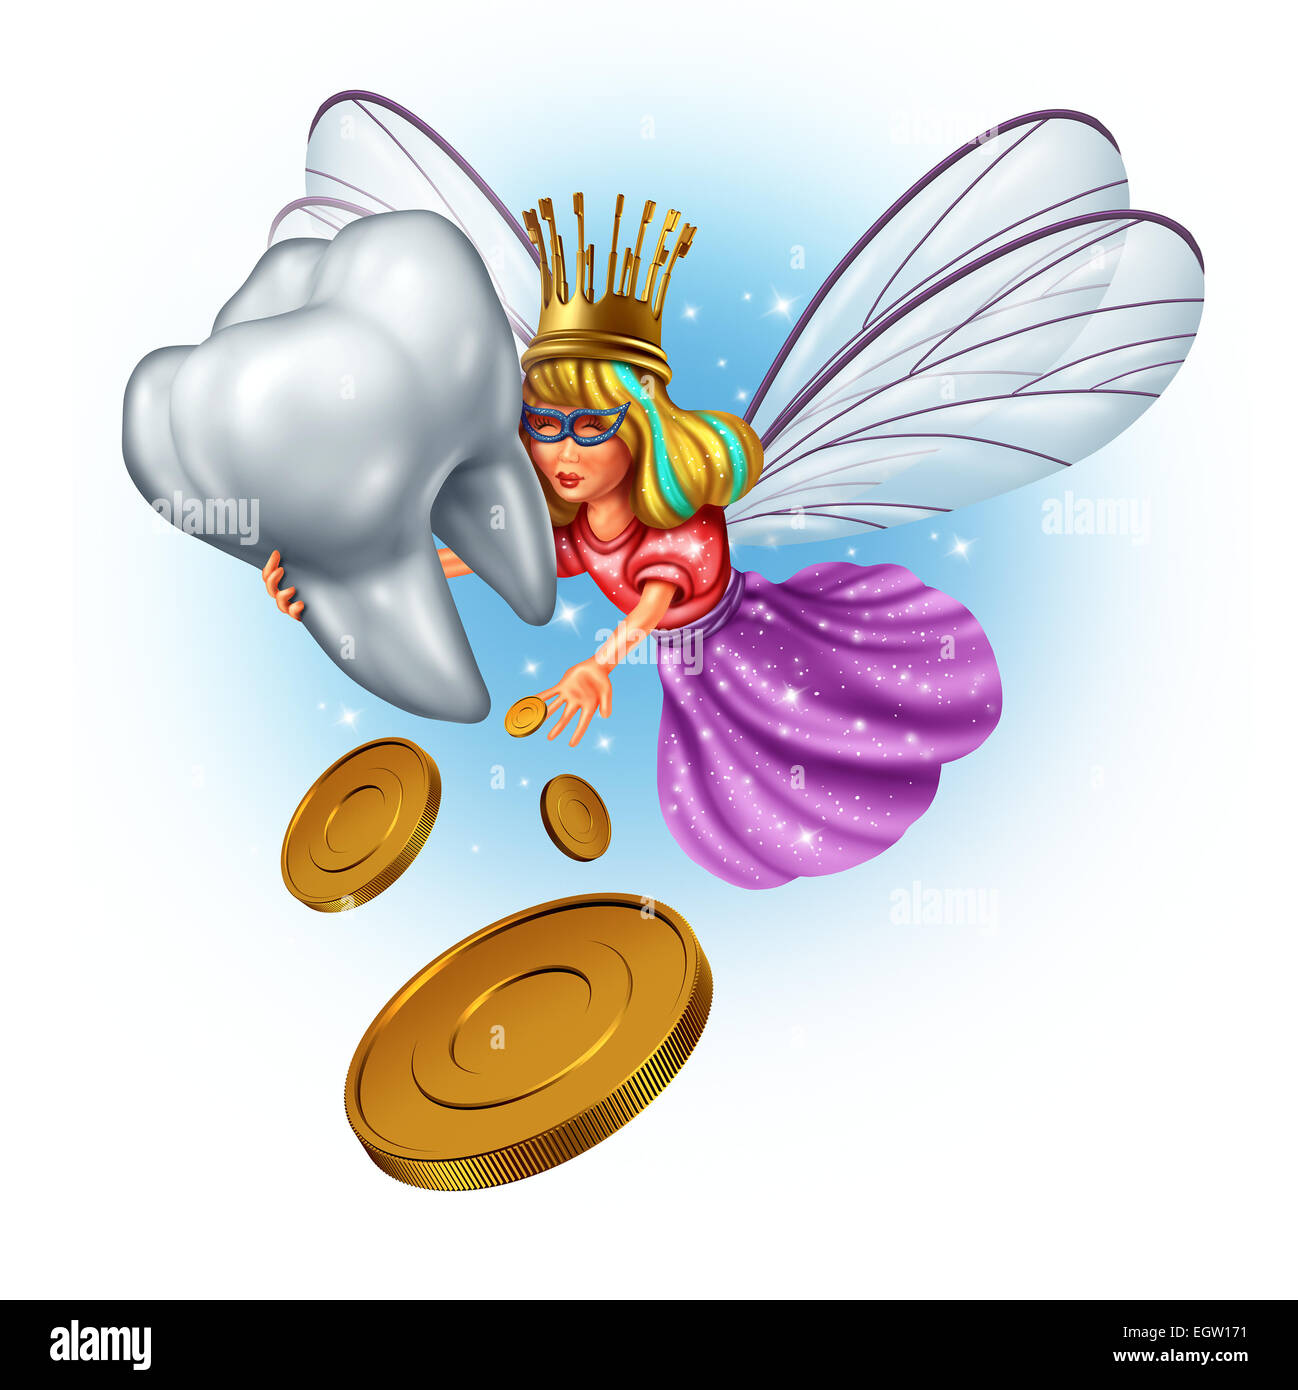 Zahnfee-Charakter als eine mythische und magische Prinzessin tragen einen goldenen Pinsel Zahnkrone aus einem Kindheit Märchen halten eine menschliche Backenzahn und Geld Münzen als Belohnung geben. Stockfoto